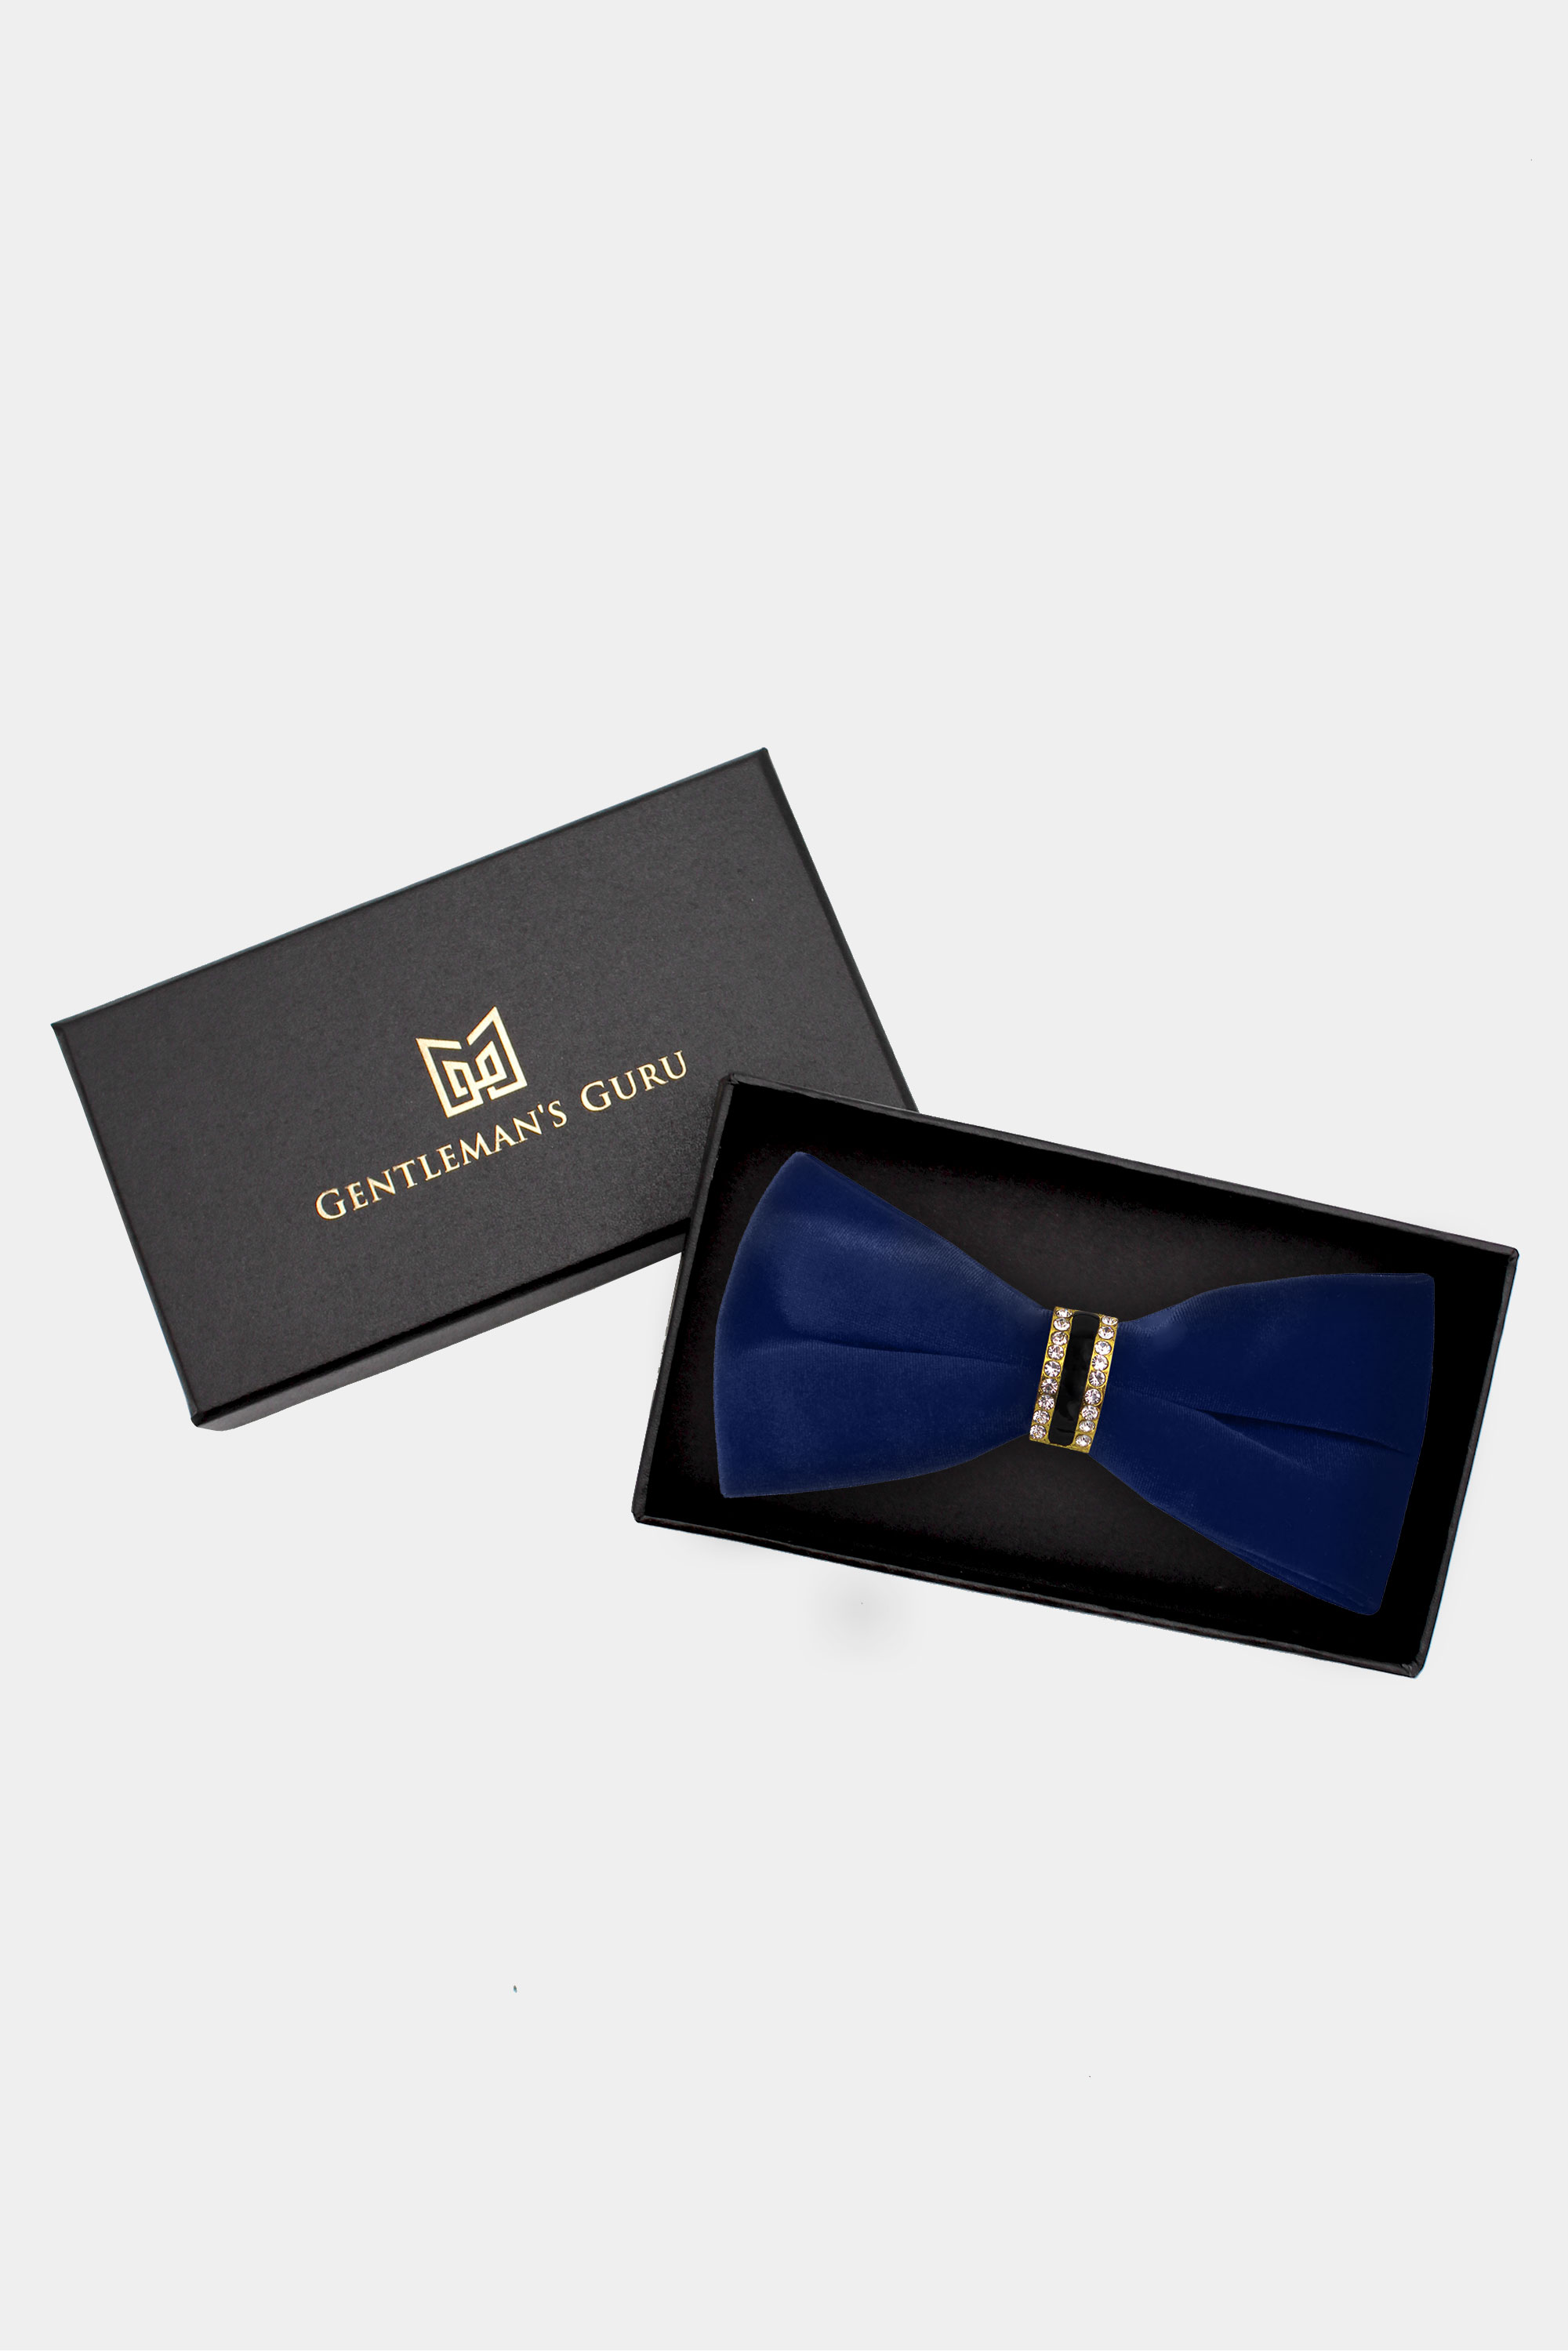 Luxury-Navy-Blue-Velvet-Bow-Tie-from-Gentlemansguru.com